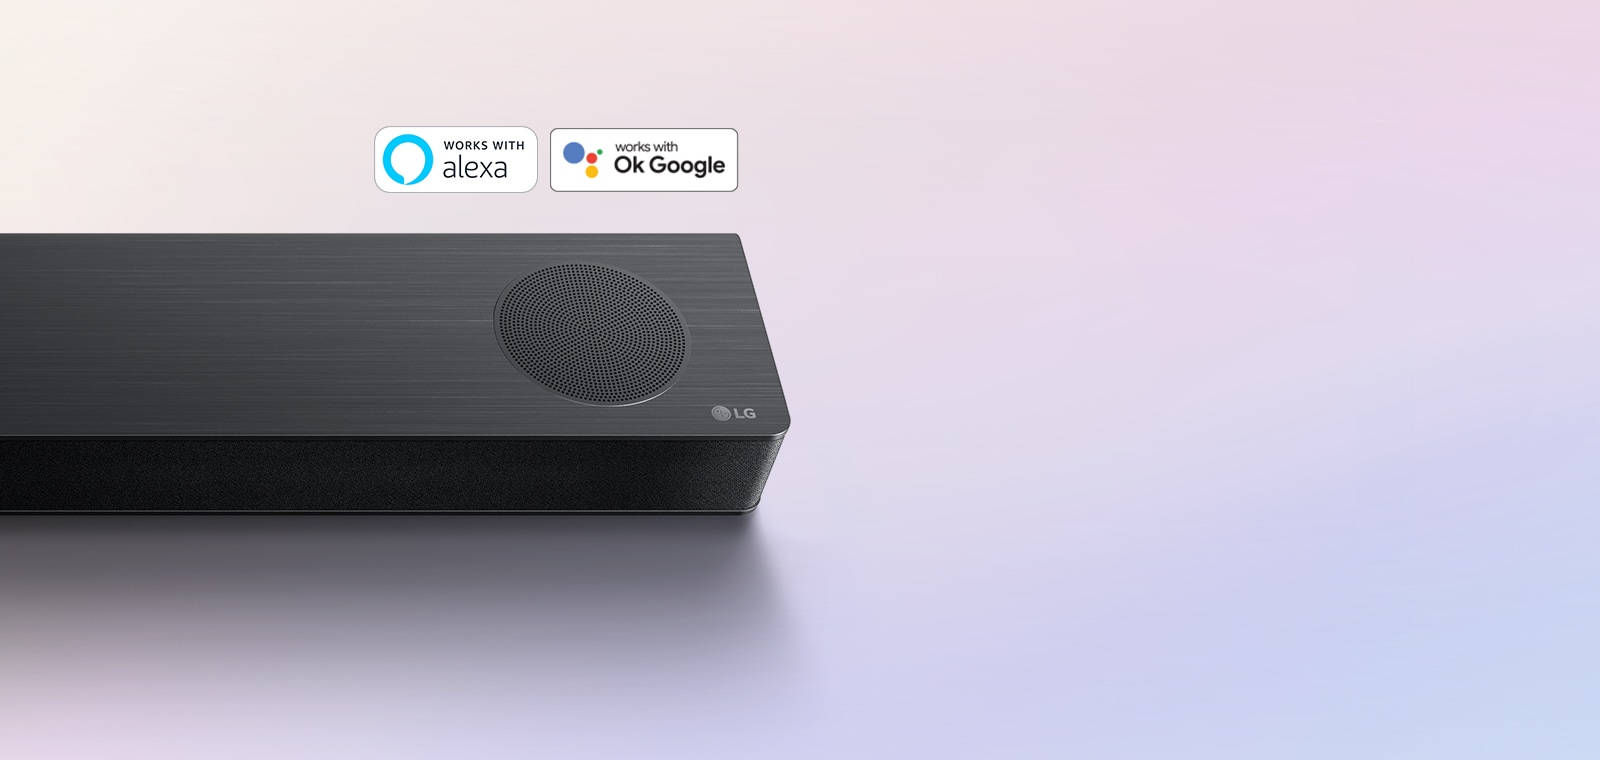 LG Soundbar zvučnik postavljen je na pod, logotip LG se nalazi u desnom uglu Soundbar zvučnika. Logotipi Alexa i OK GOOGLE nalaze se na Soundbar zvučniku.